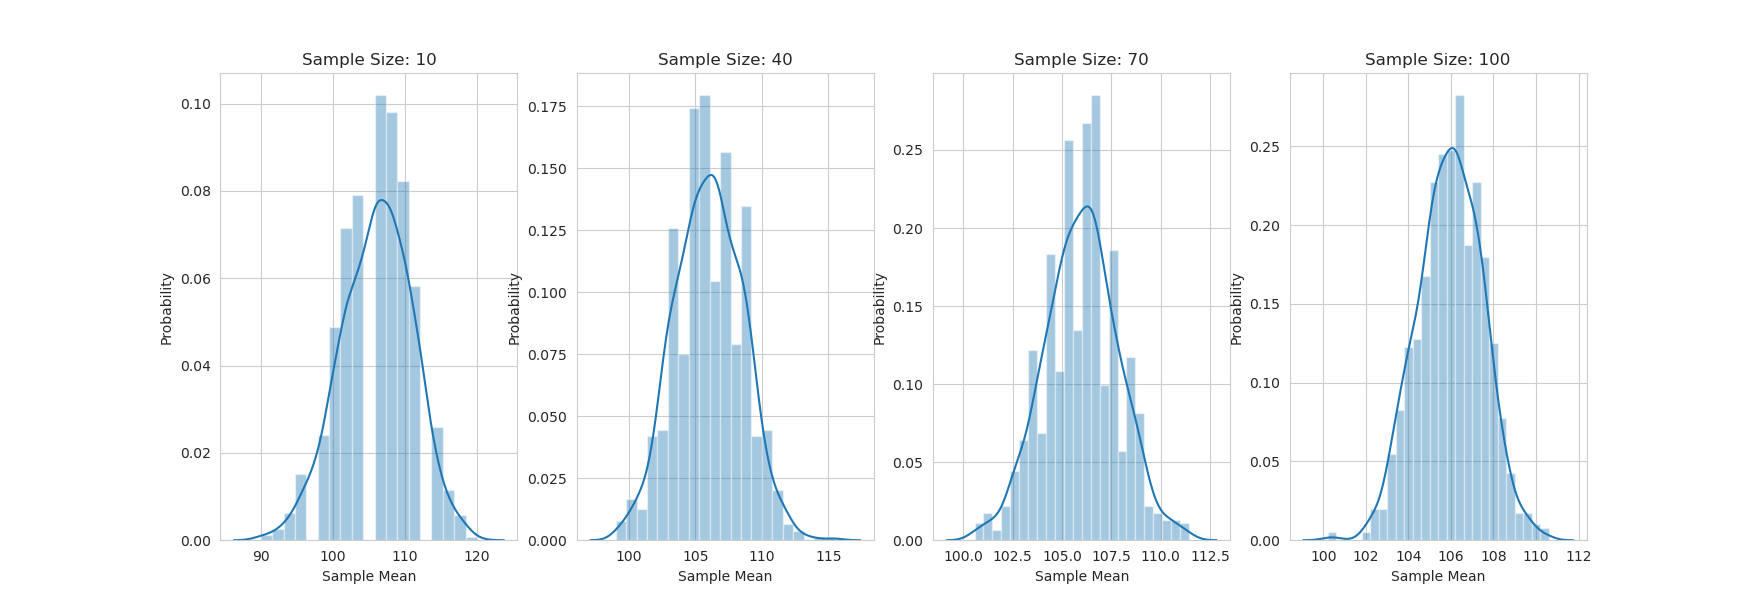 sampling-distributions-5.21-extra.png